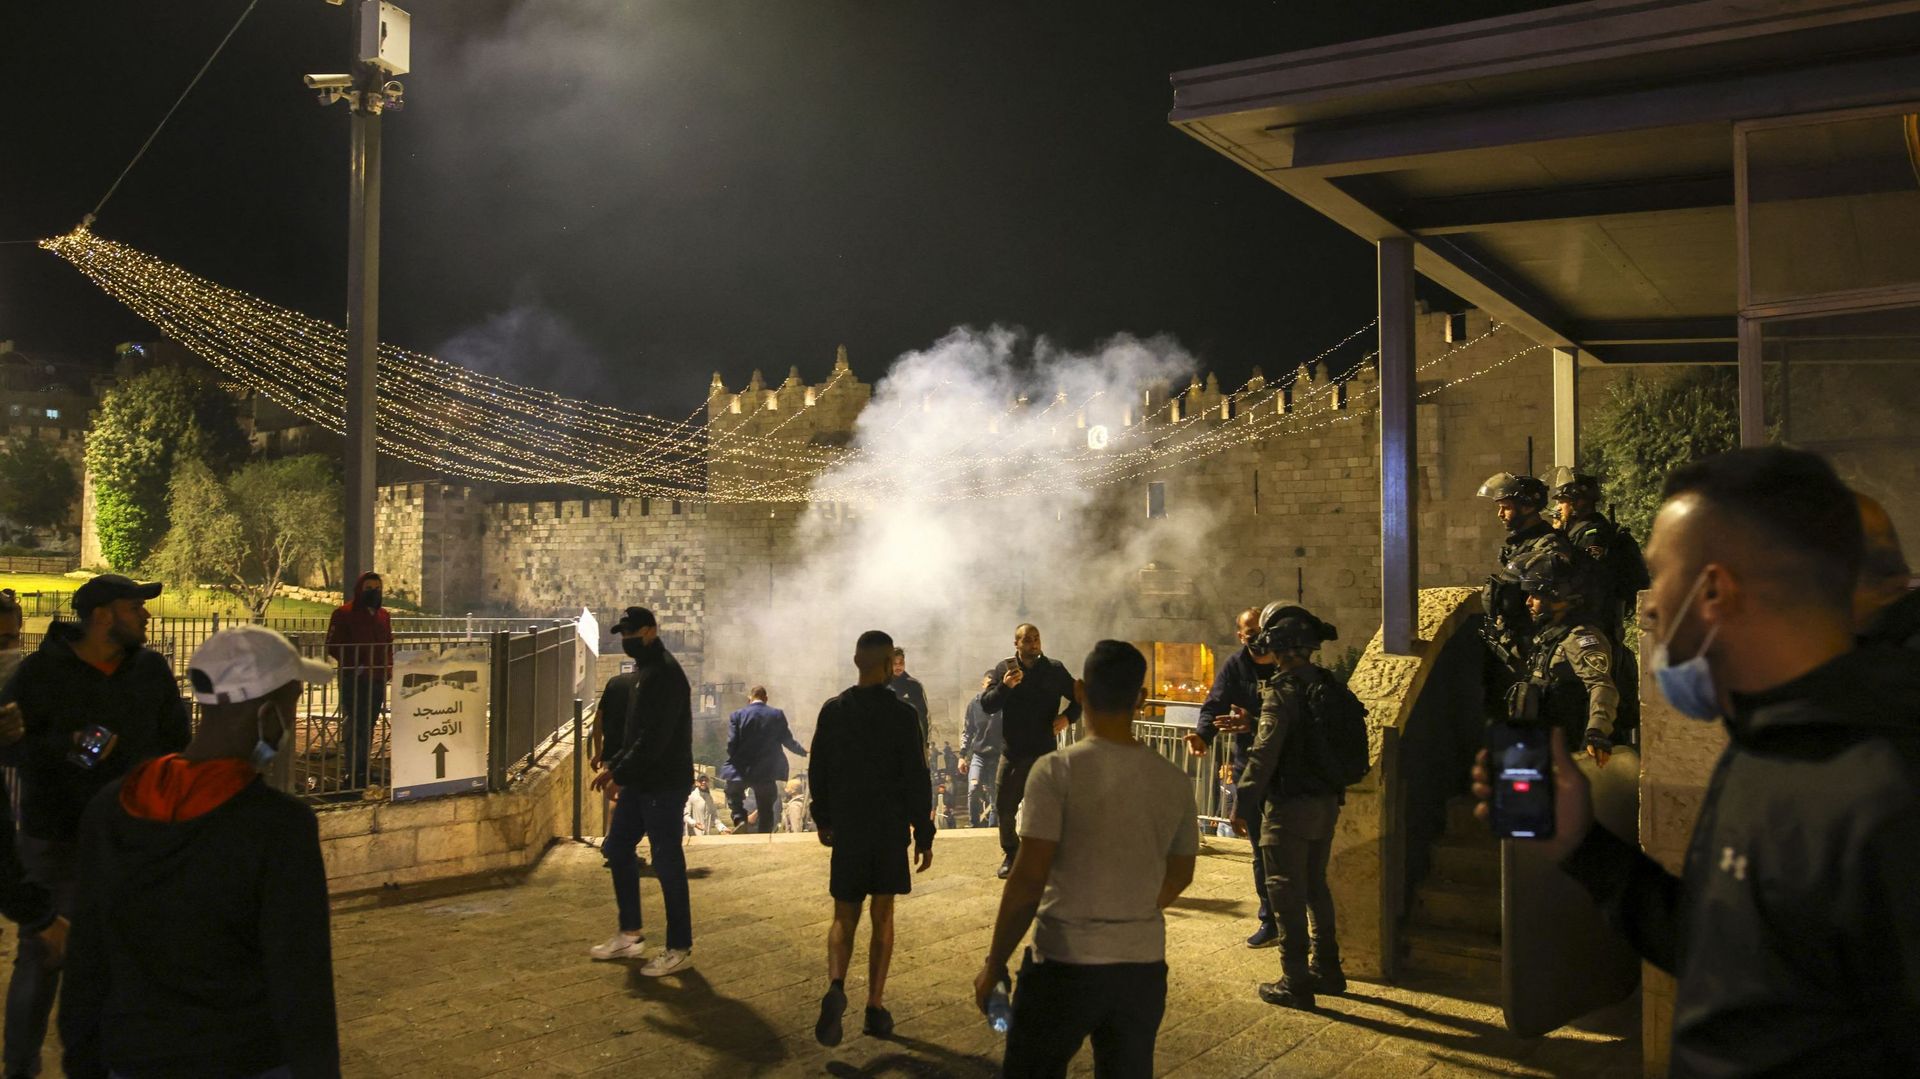 Jérusalem: flambée de violence suite à une manifestation de juifs extrémistes dans les quartiers arabes